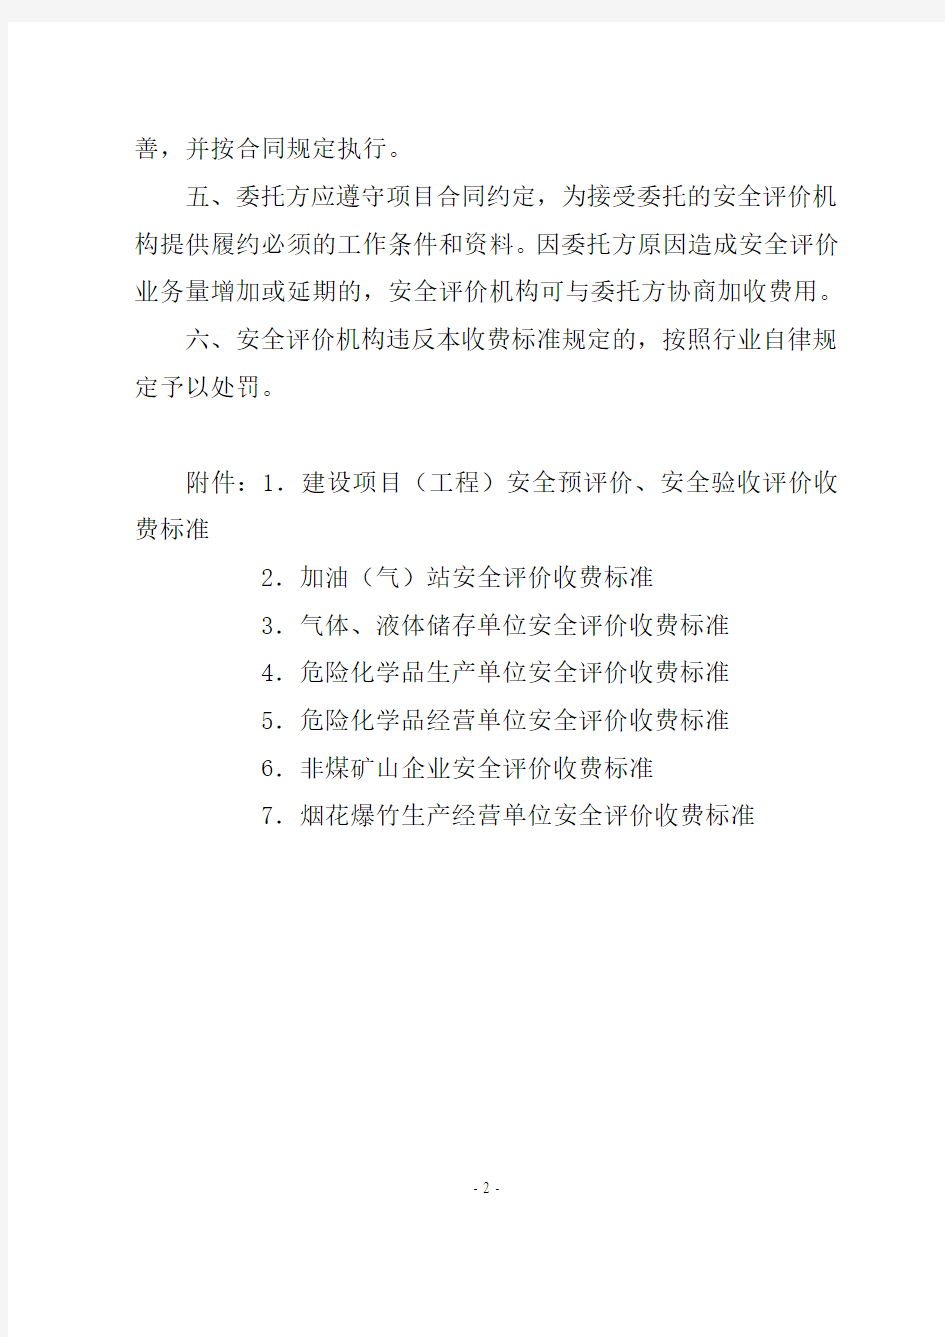 重庆市安全评价收费标准(试行)